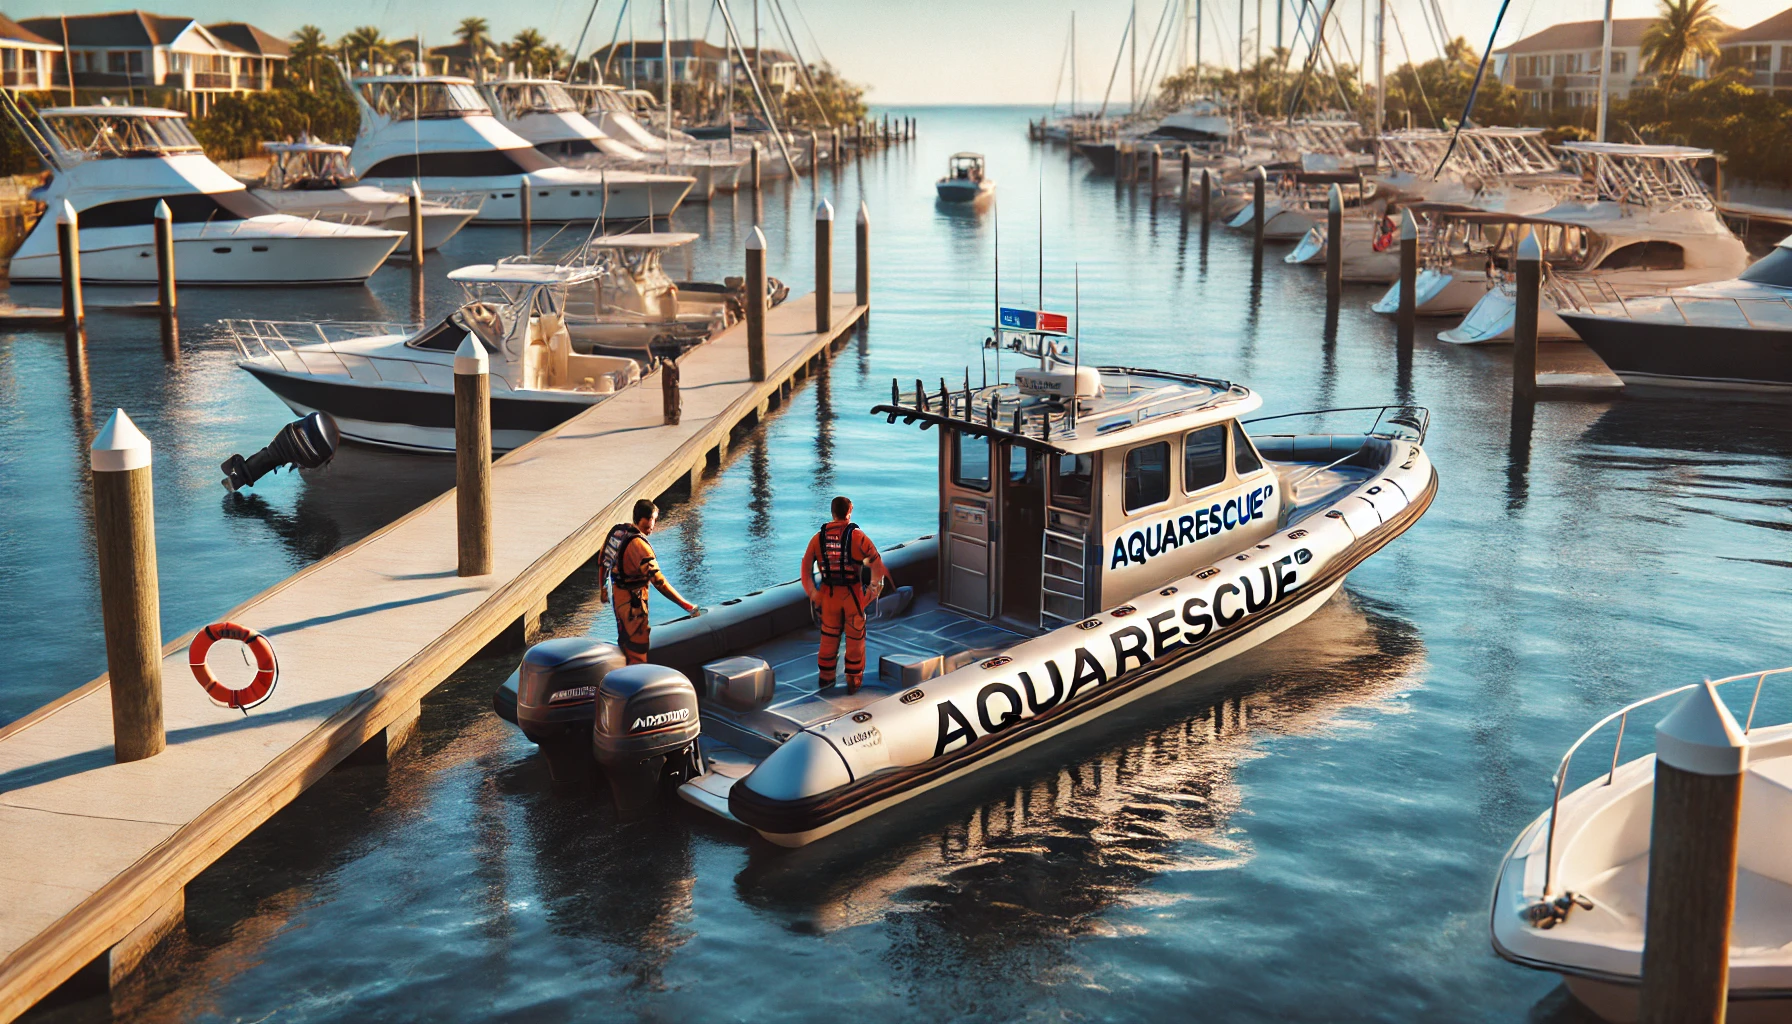 Exklusiver Club für Boots- und Yachtbesitzer, der schnelle Pannenhilfe und Abschleppdienste auf dem Wasser bietet. Sorgenfrei Bootfahren!